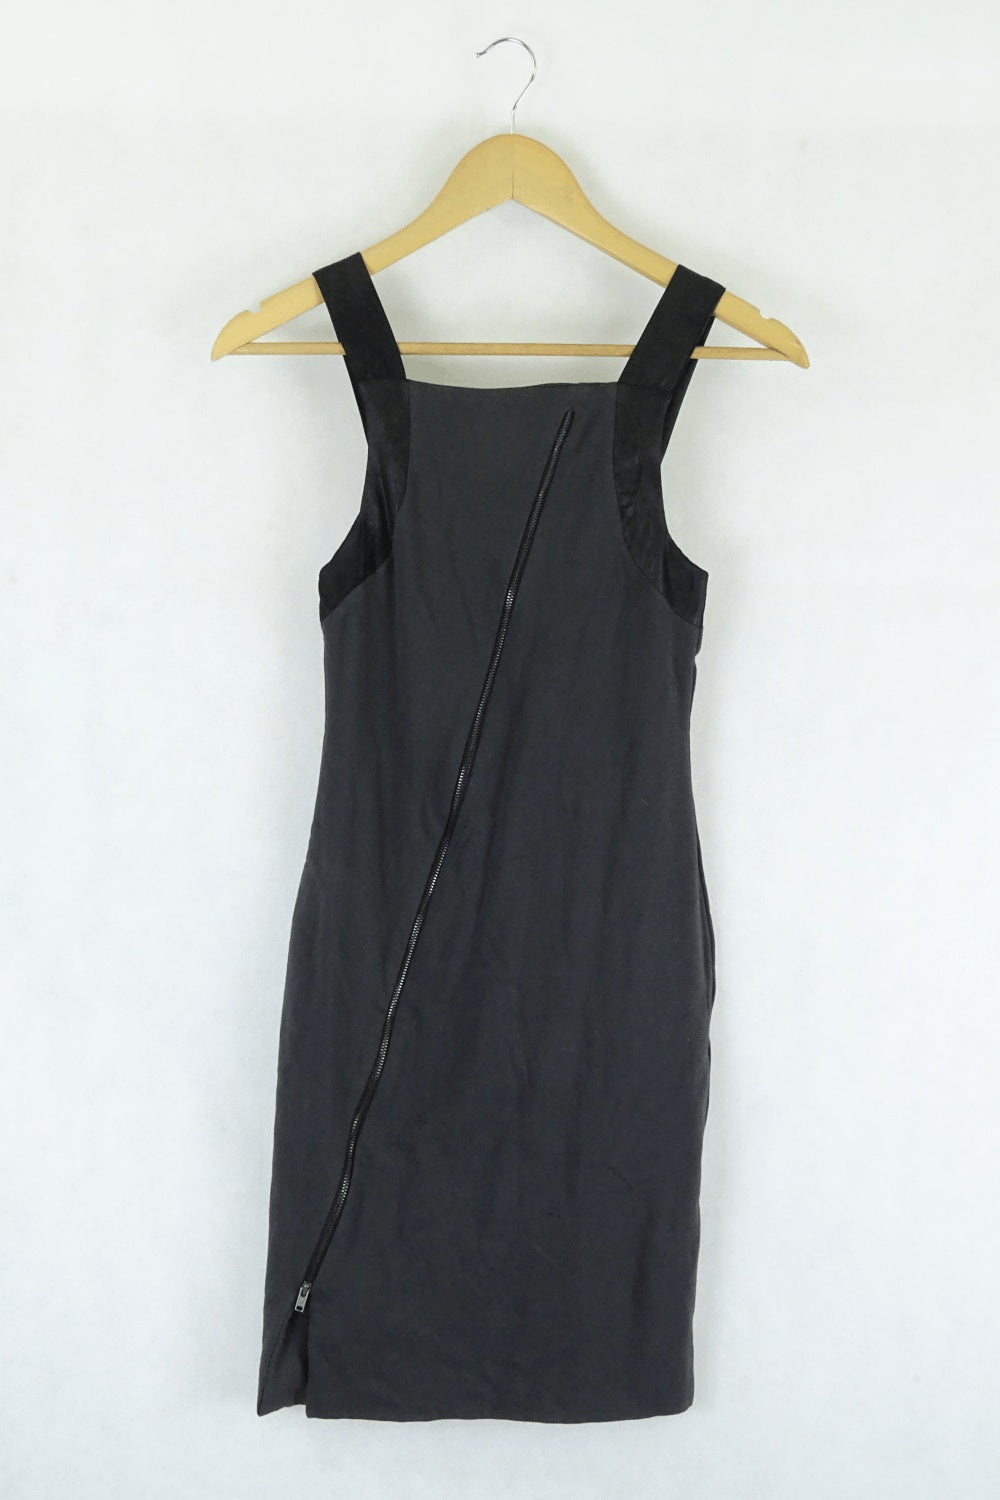 Kookai Grey Dress 2 (12AU)